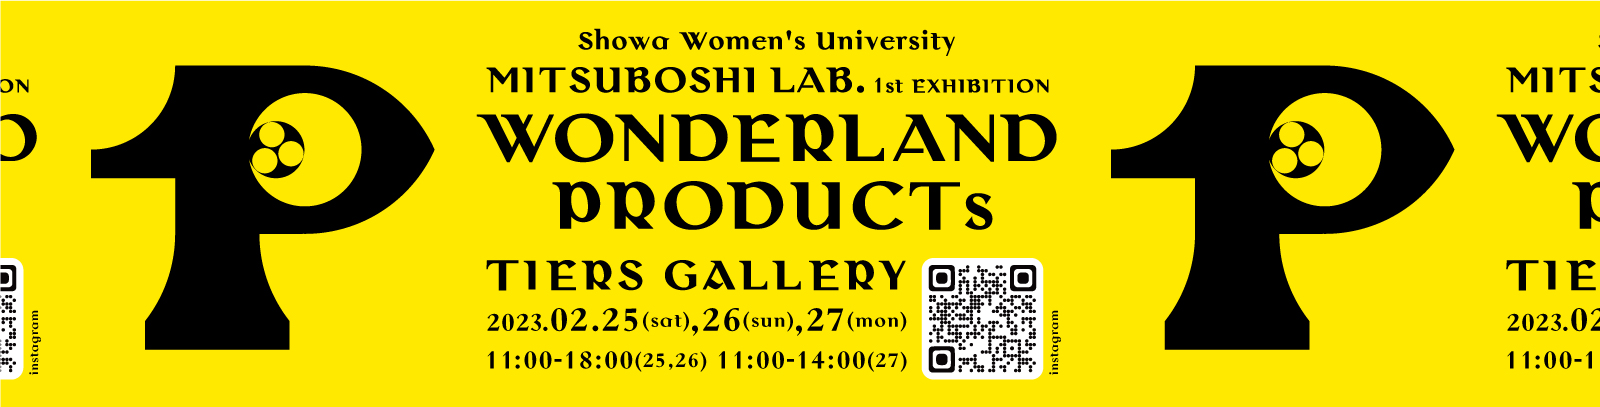 昭和女子大学三星安澄研究室展「WONDERLAND PRODUCTS」